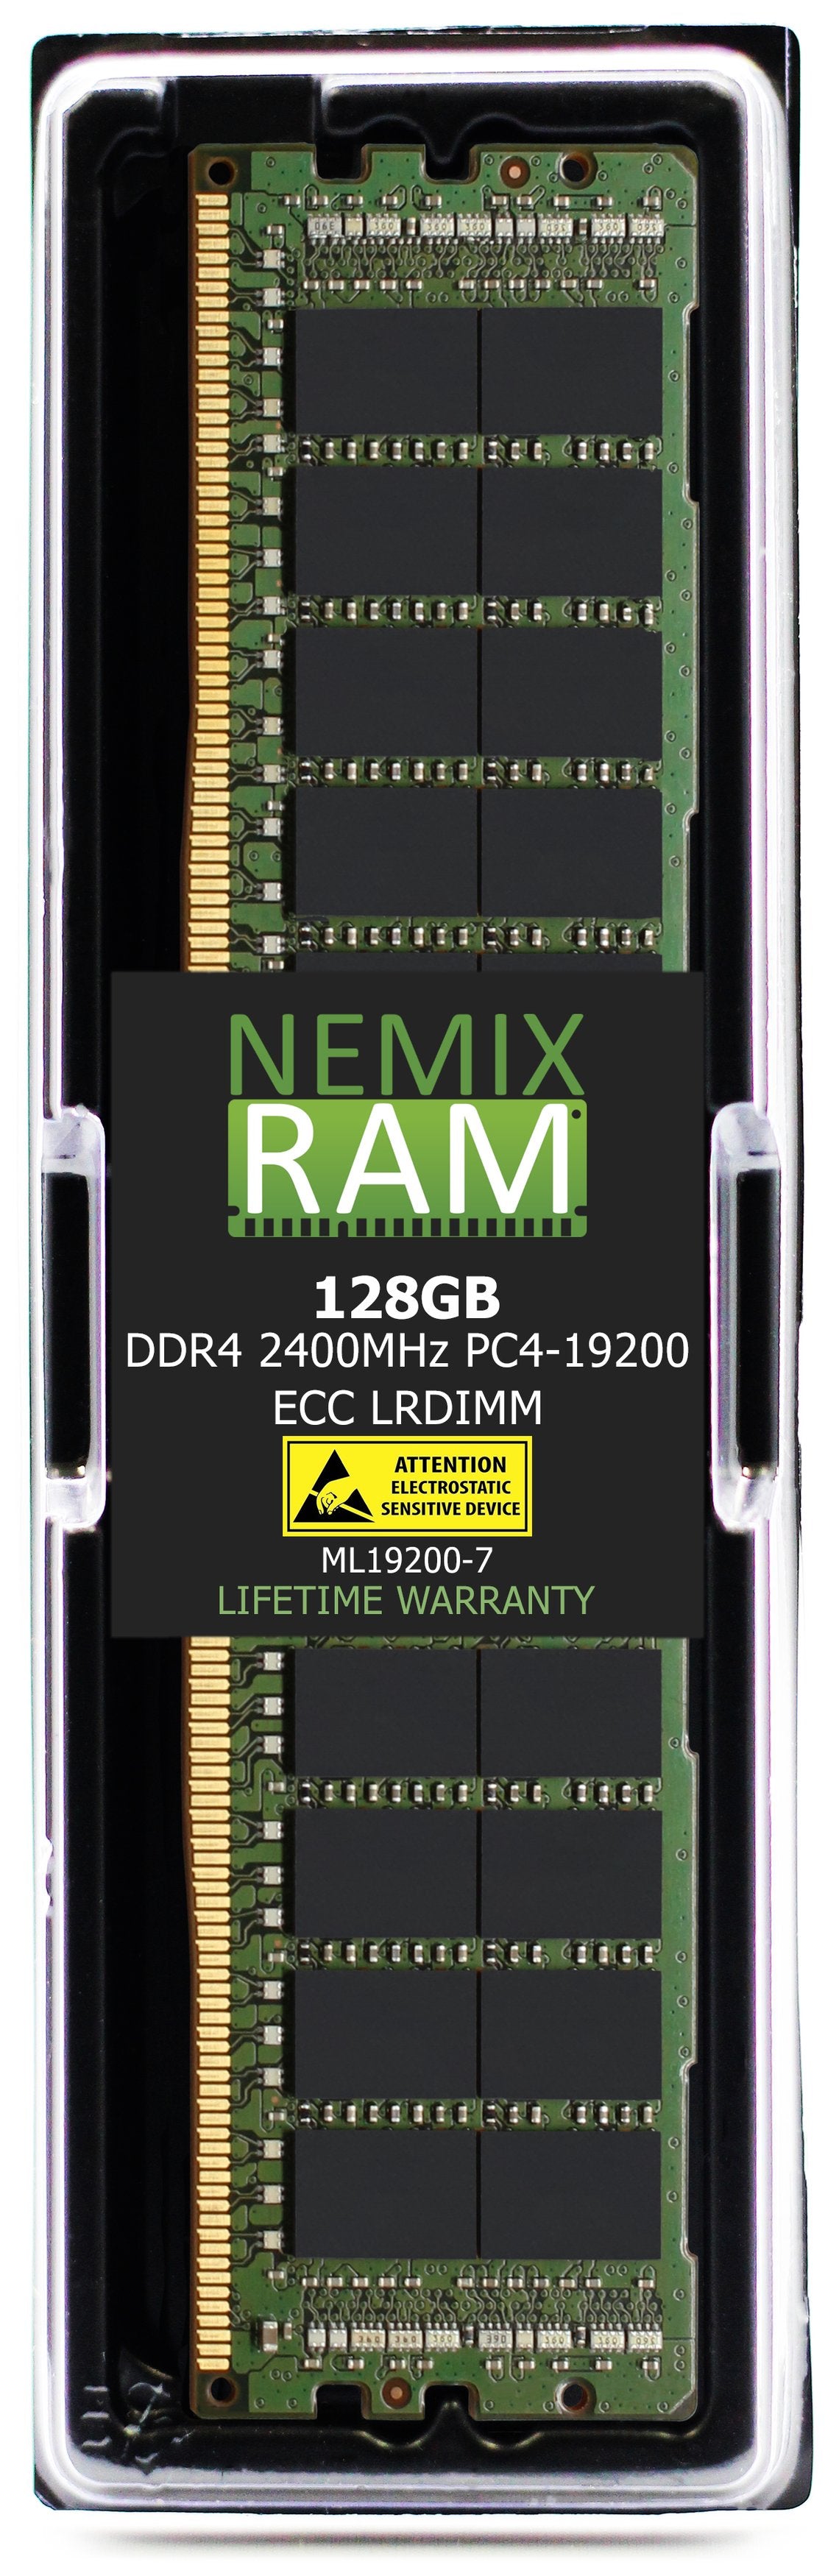 Hynix HMABAGL7M4R4N-UL 128GB DDR4 2400MHZ PC4-19200 LRDIMM Compatible Memory Module